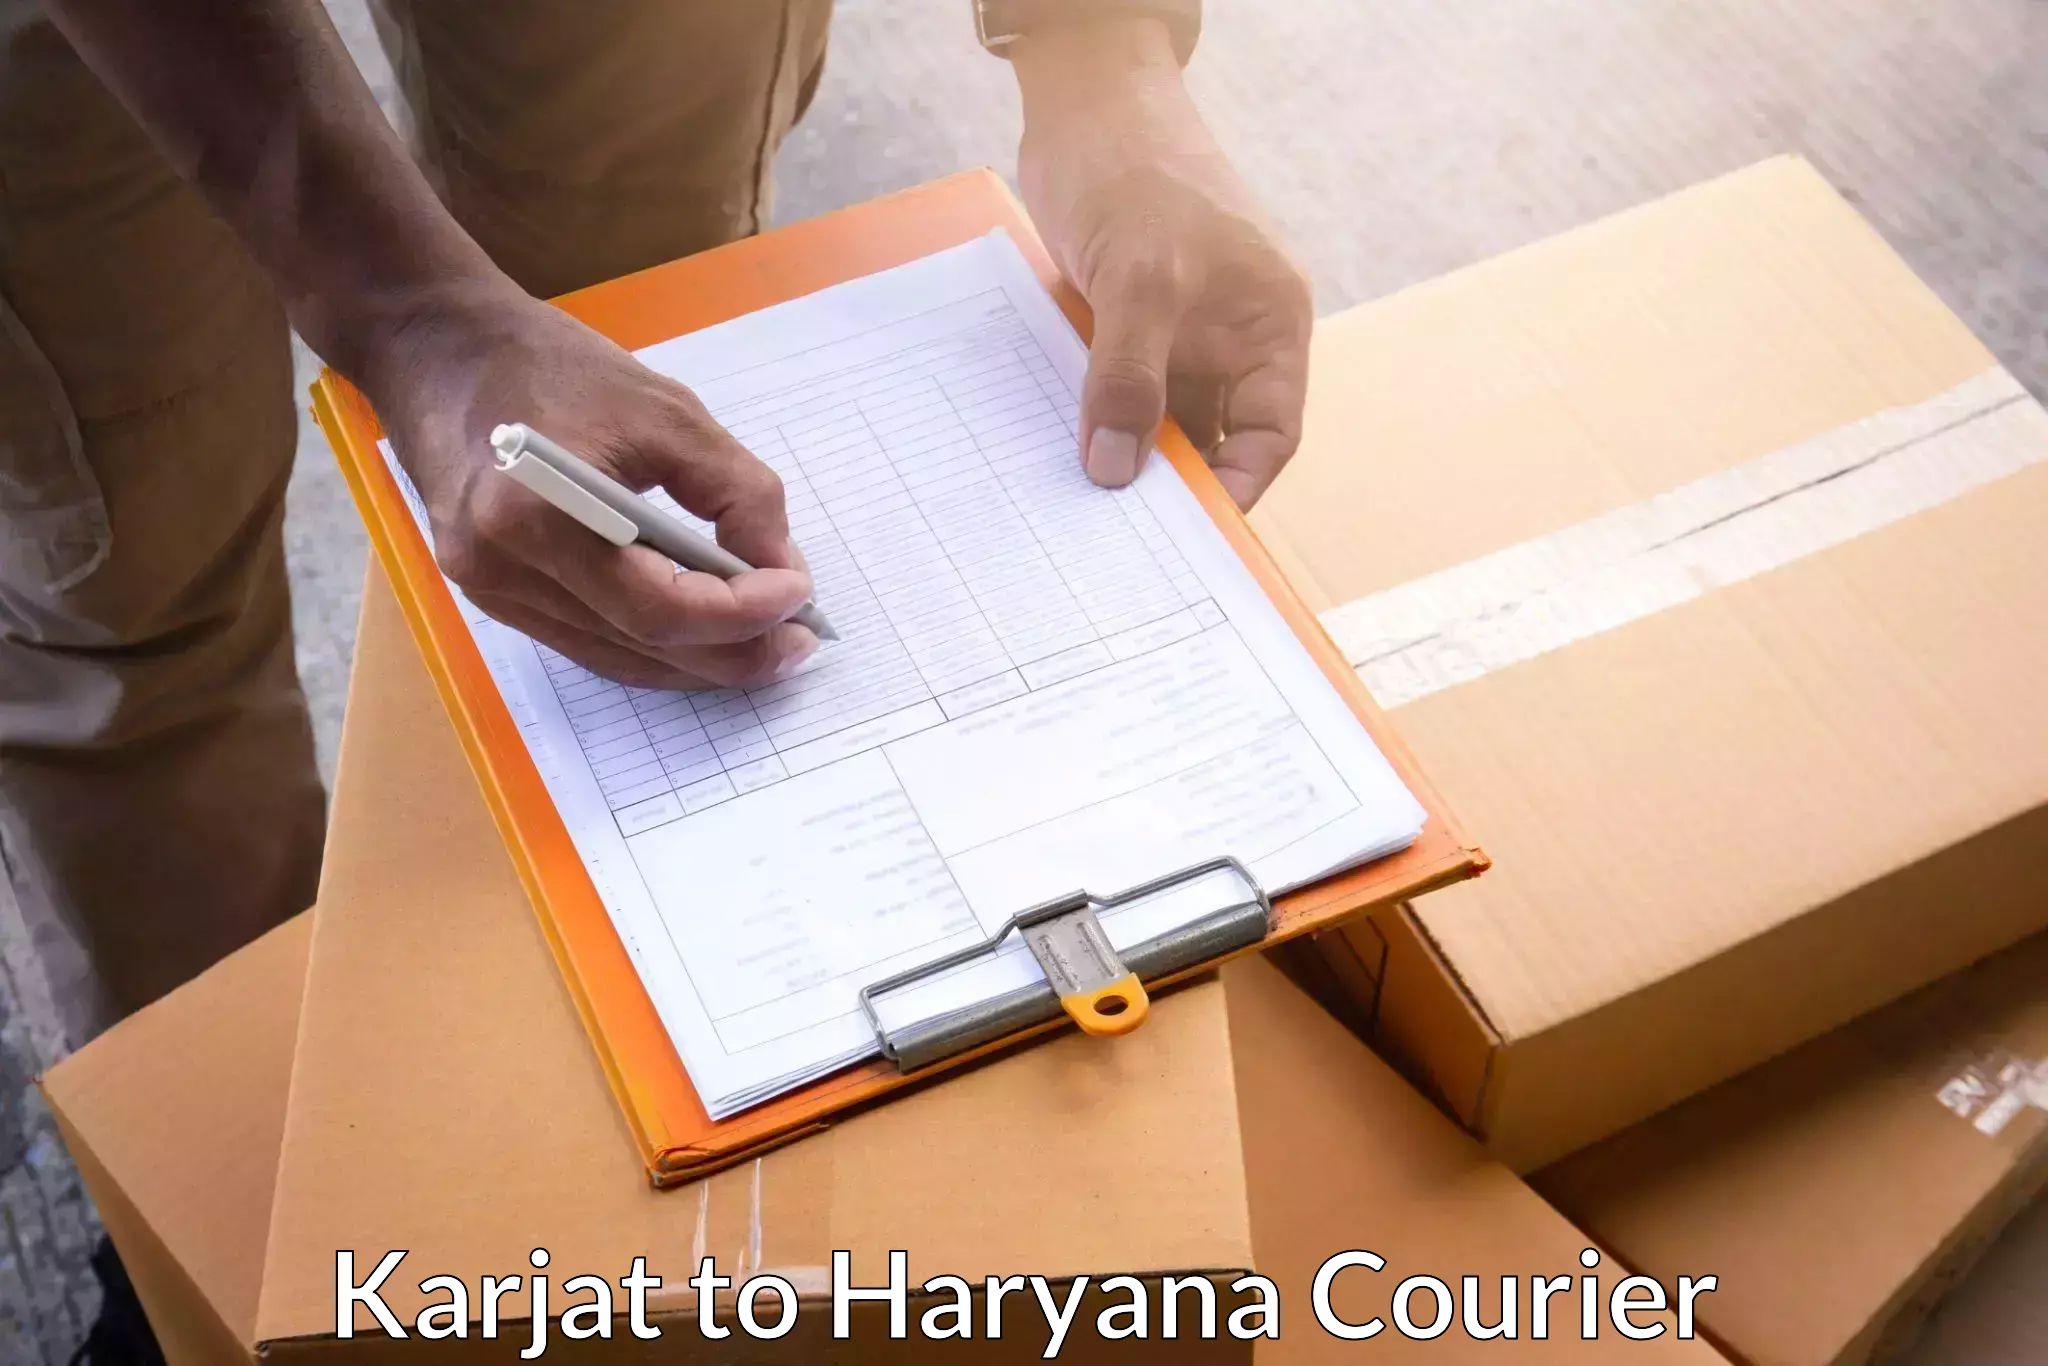 Large package courier Karjat to IIIT Sonepat